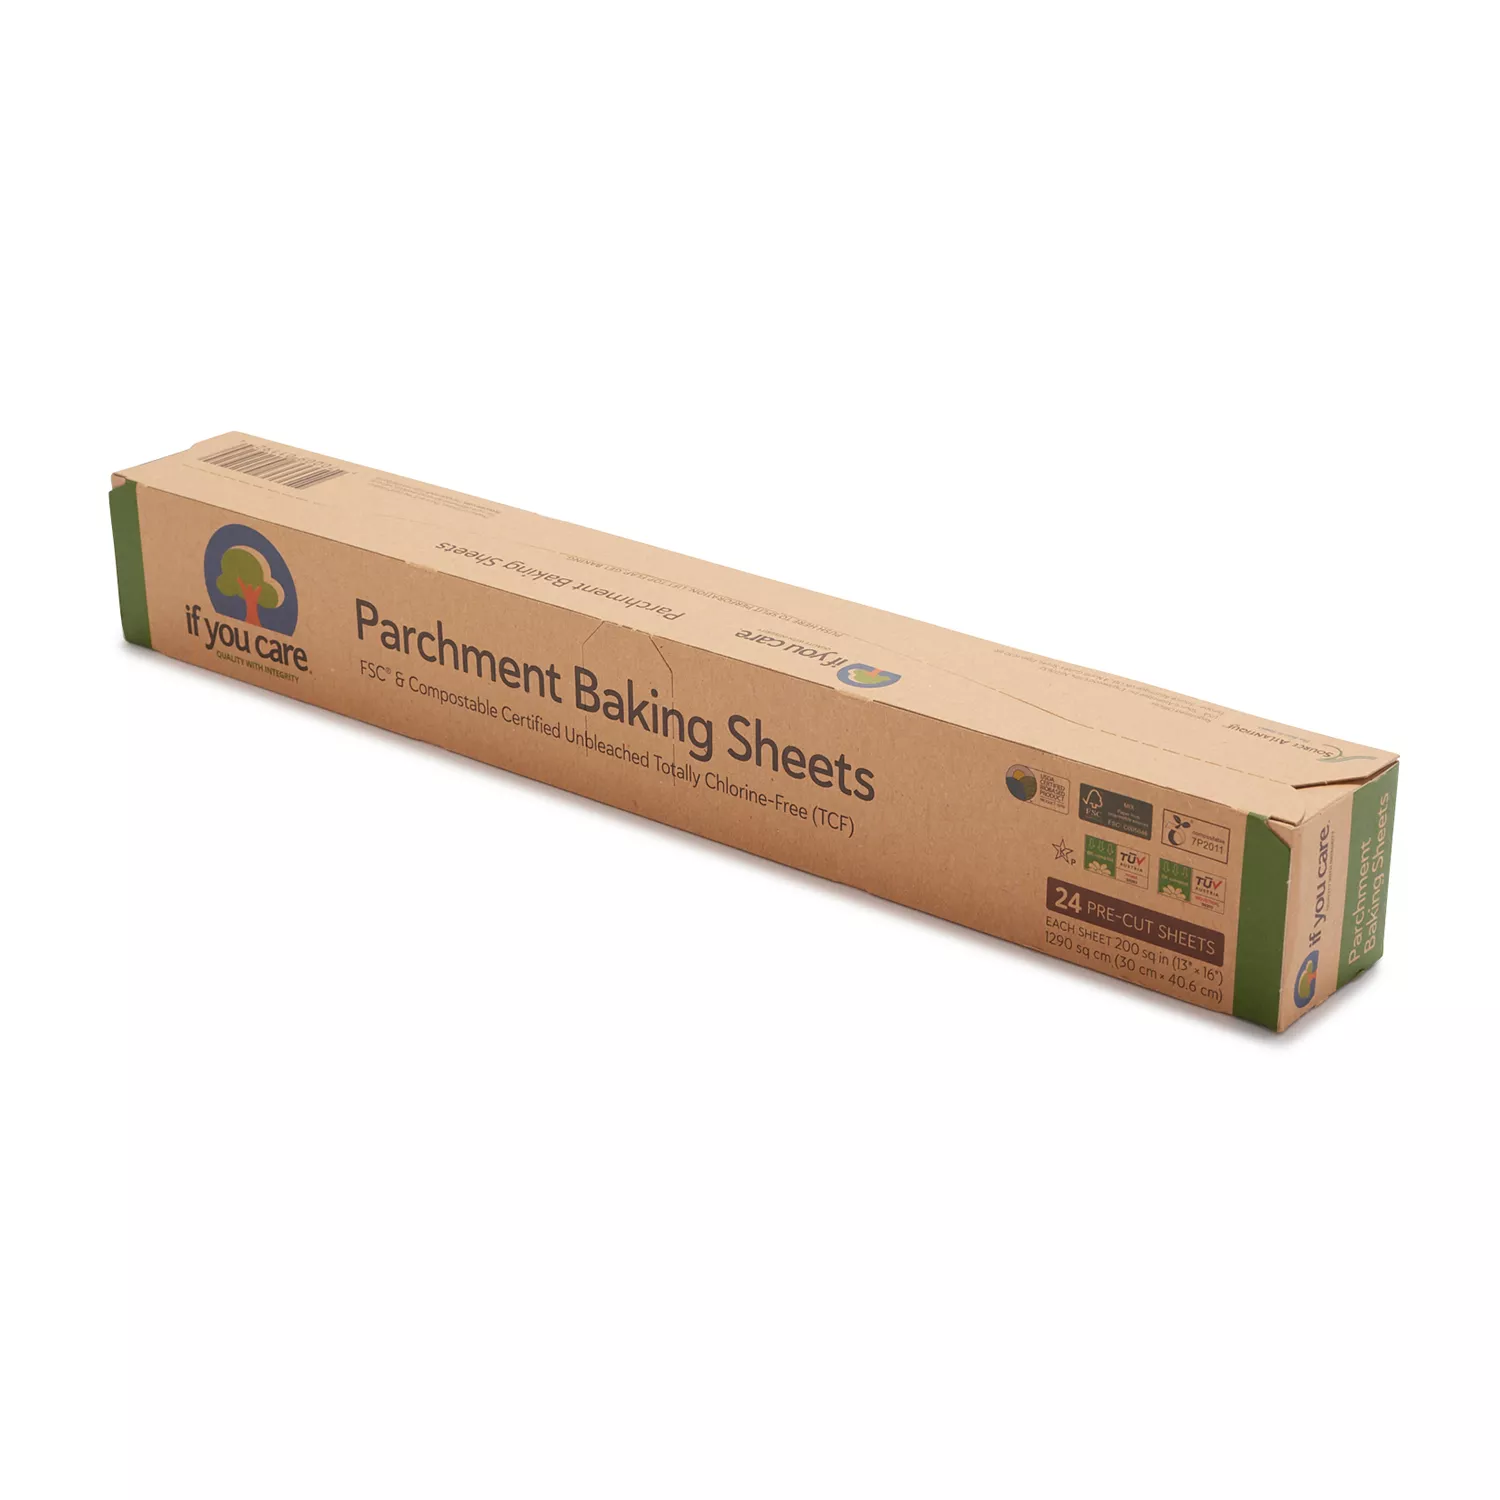 50 Count Parchment Paper Sheets Unbleached Baking Sheets Precut